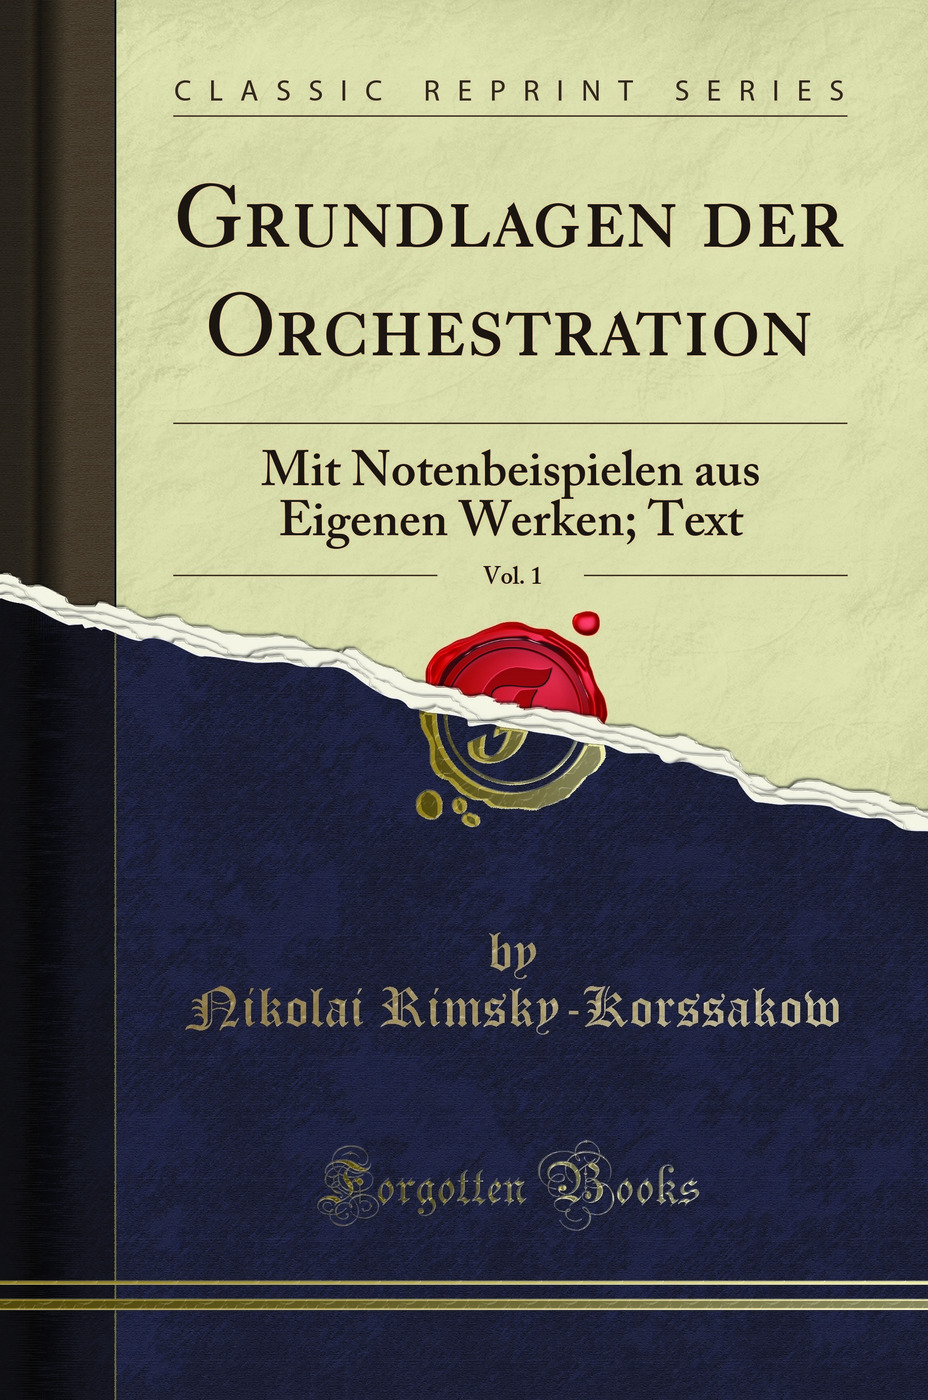 Grundlagen der Orchestration, Vol. 1: Mit Notenbeispielen aus Eigenen Werken - Nikolai Rimsky-Korssakow